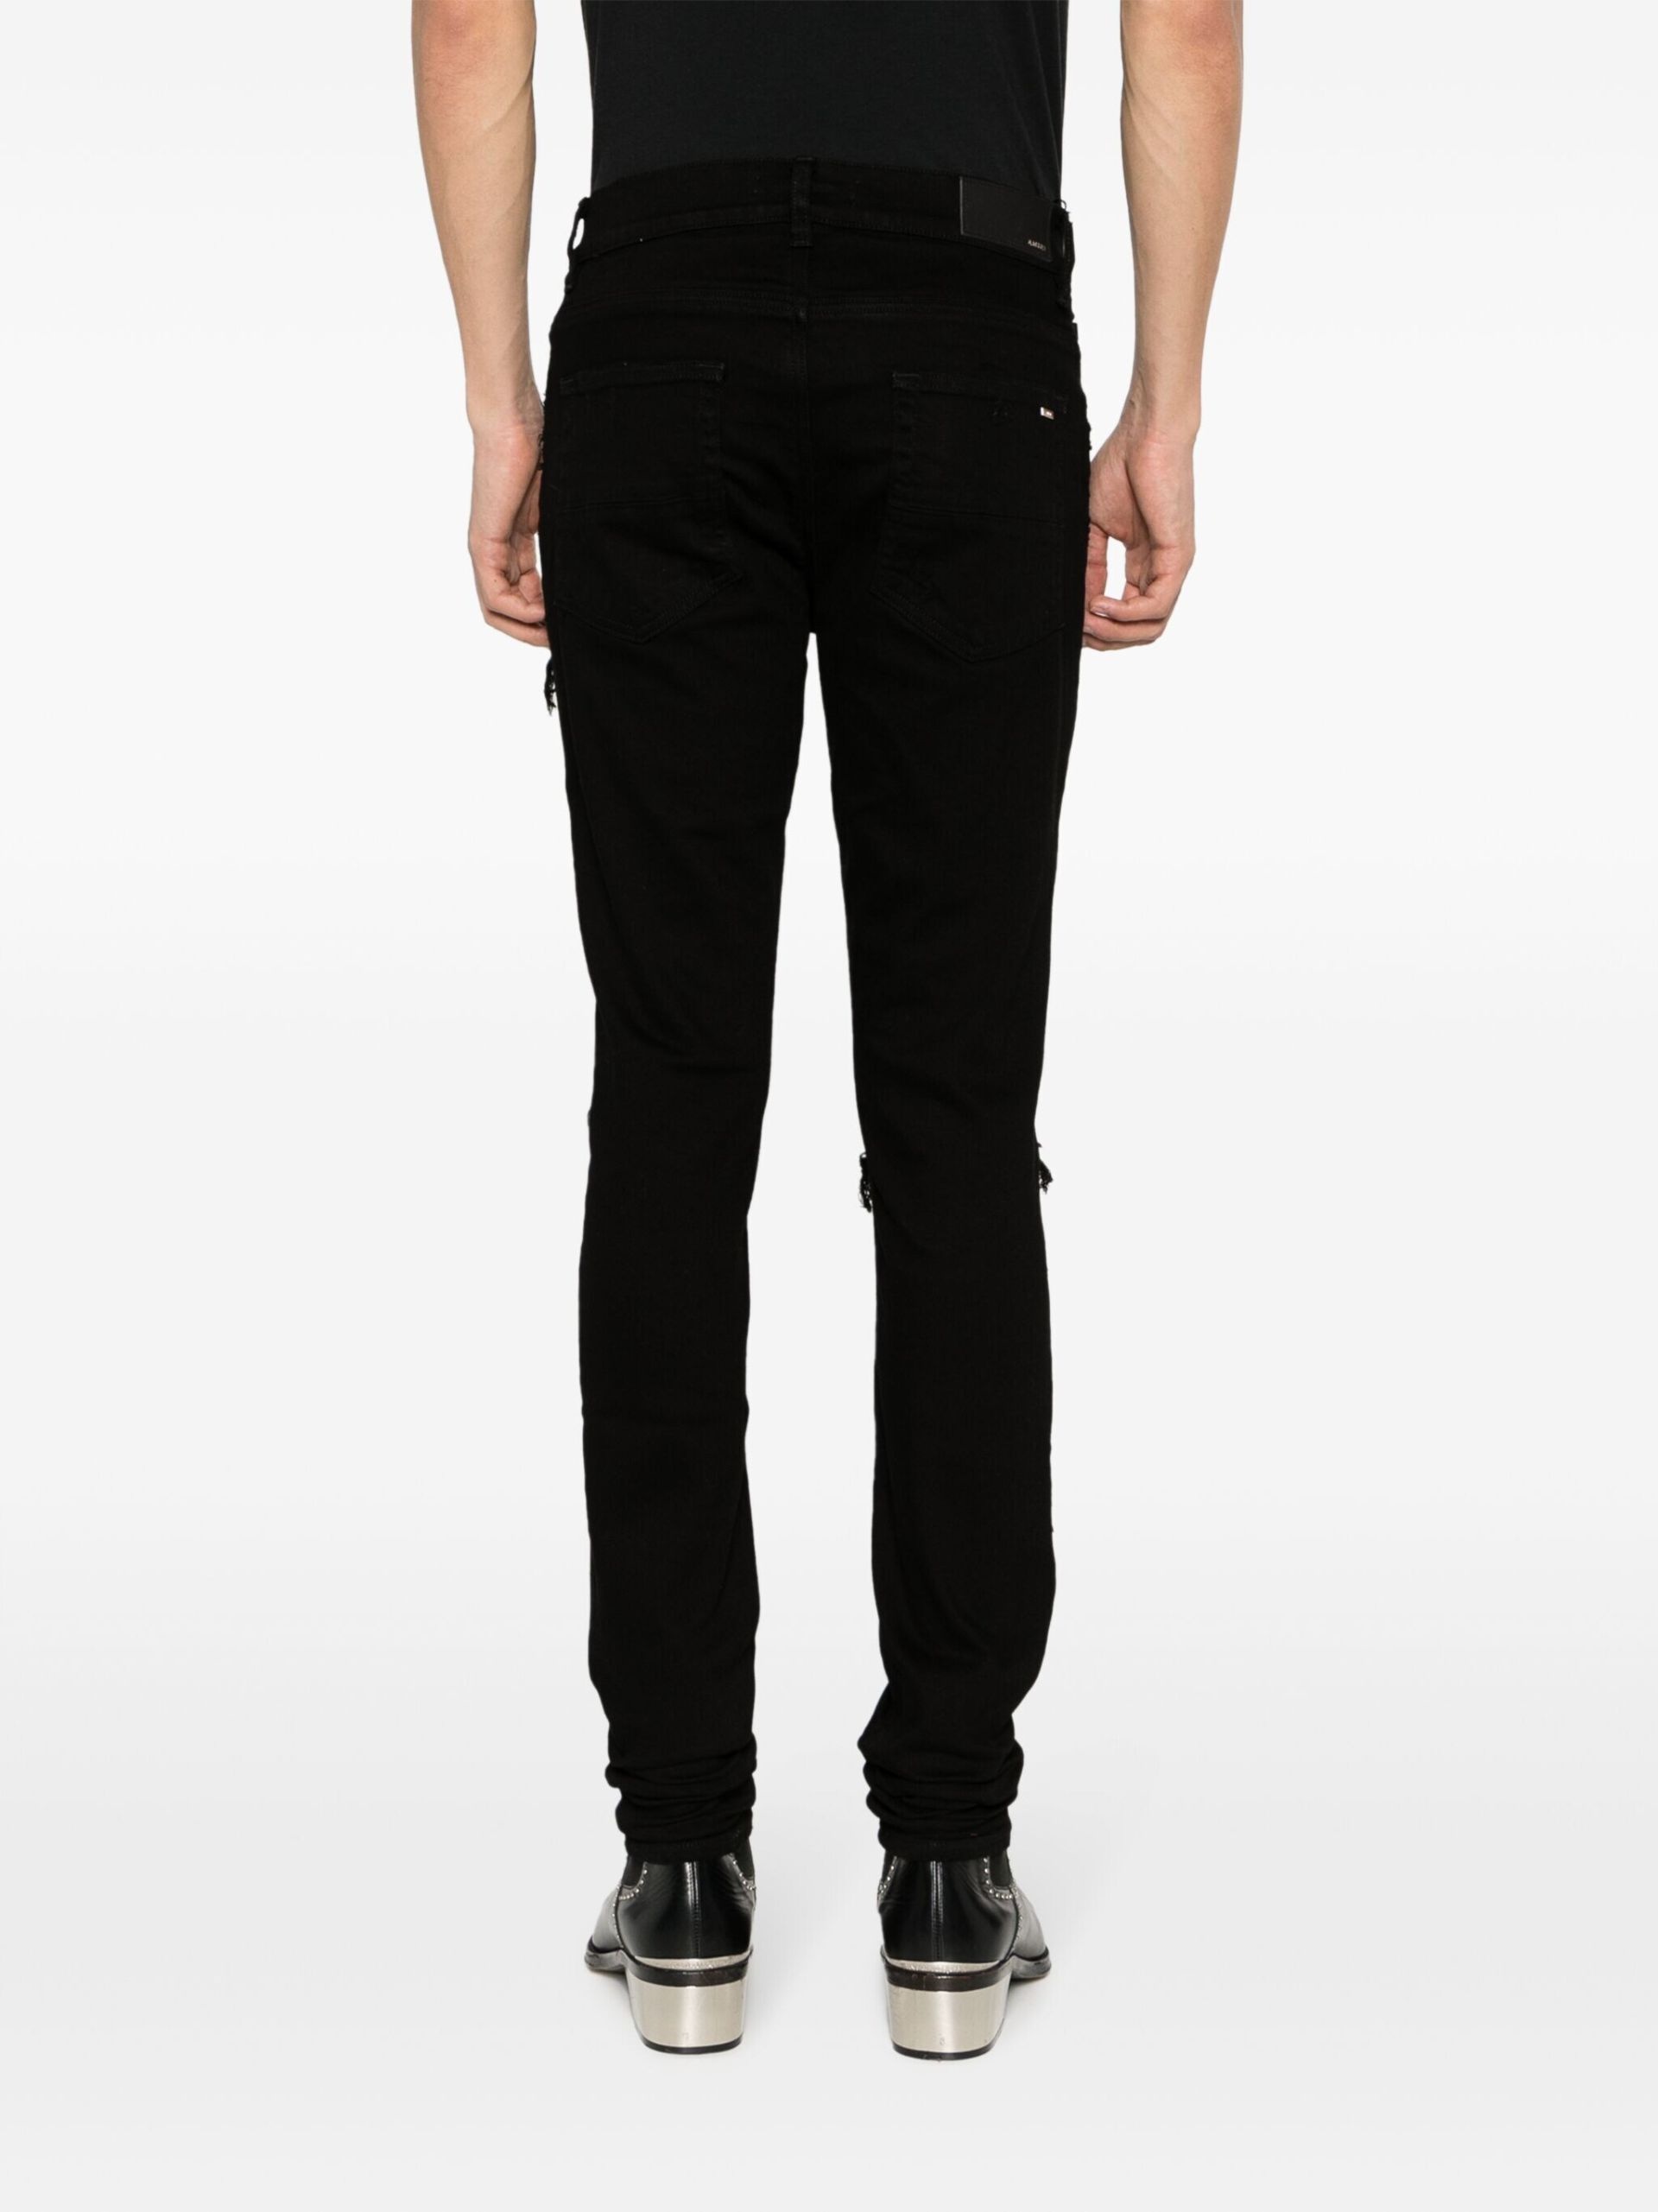 Black Distressed Skinny Cut Jeans - 4